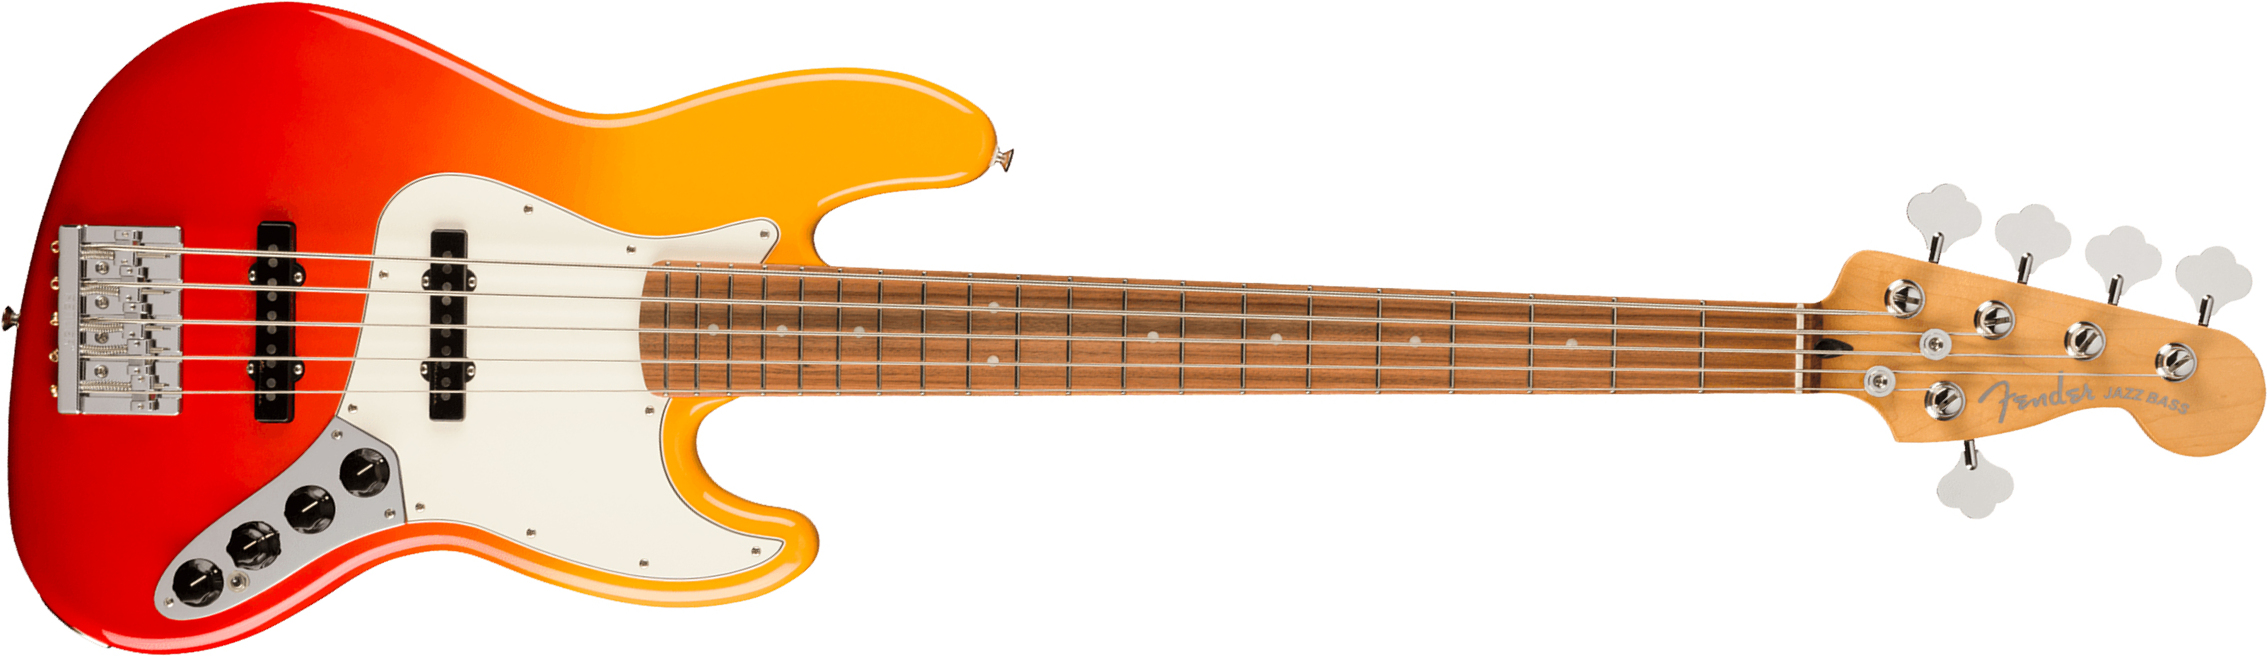 Fender Jazz Bass Player Plus V Mex 5c Active Pf - Tequila Sunrise - Bajo eléctrico de cuerpo sólido - Main picture